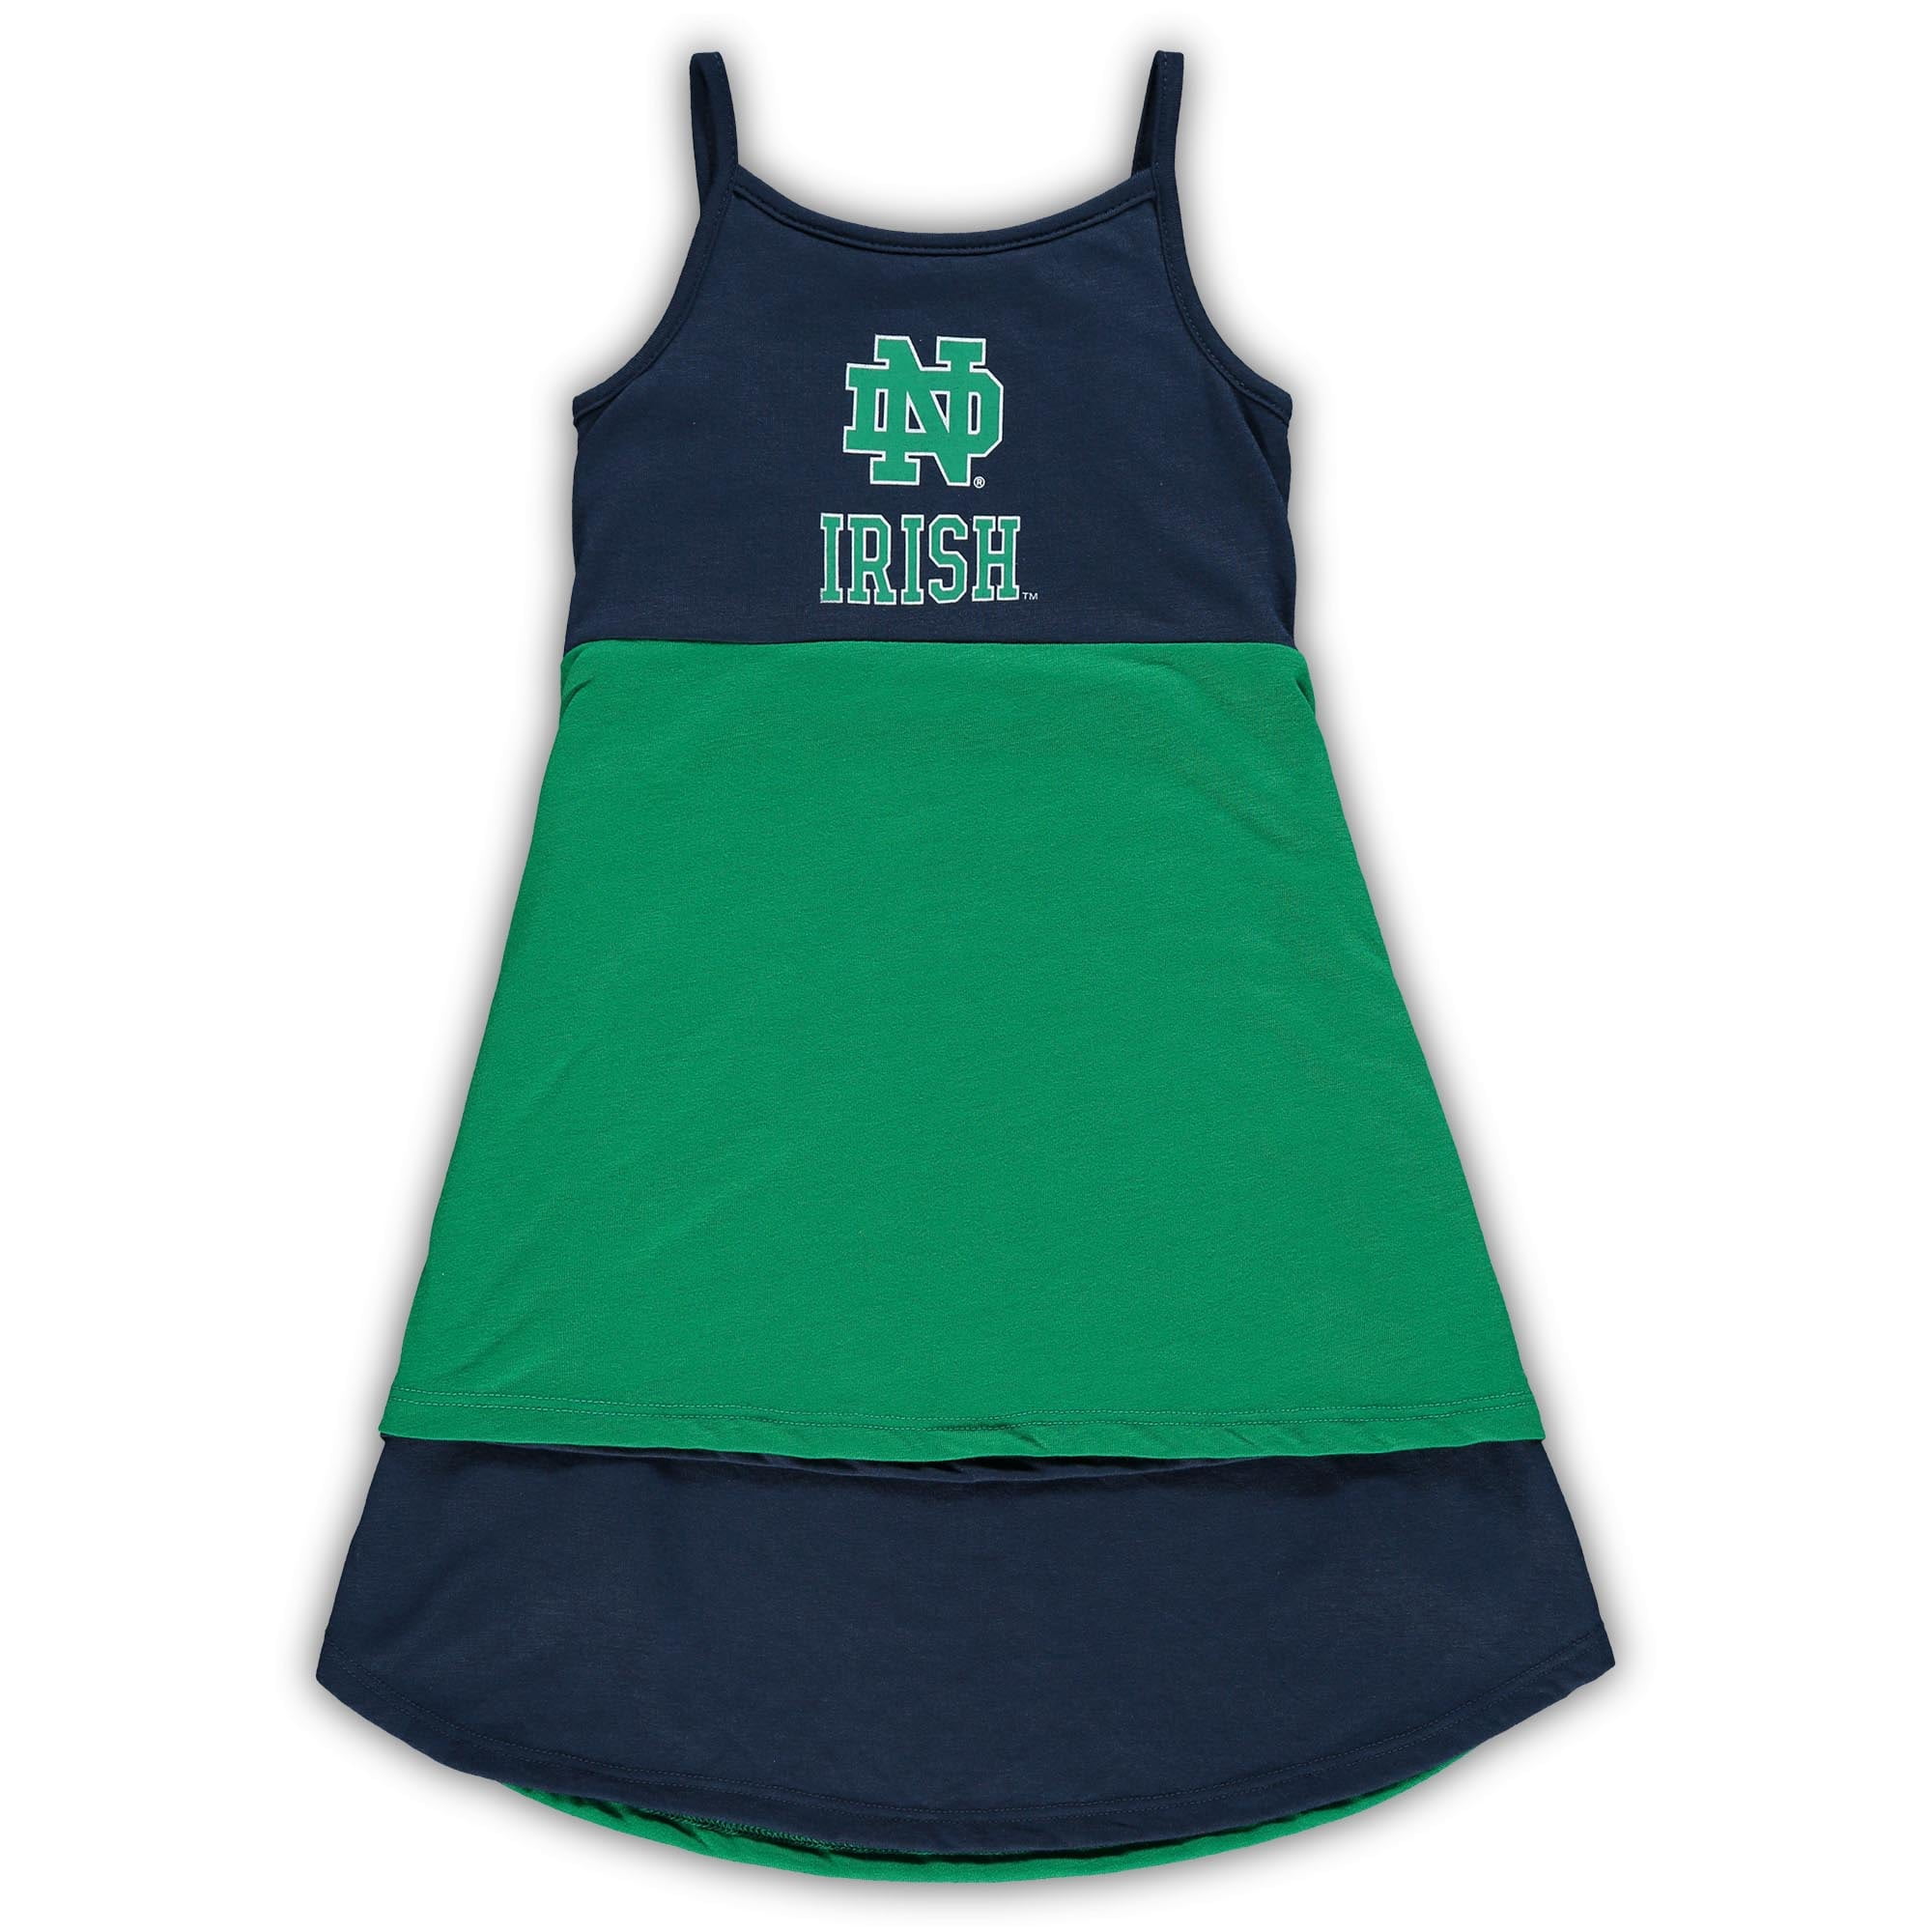 Outerstuff NCAA Toddler Girls Notre Dame Fighting Irish Cheer Jumper Dress 